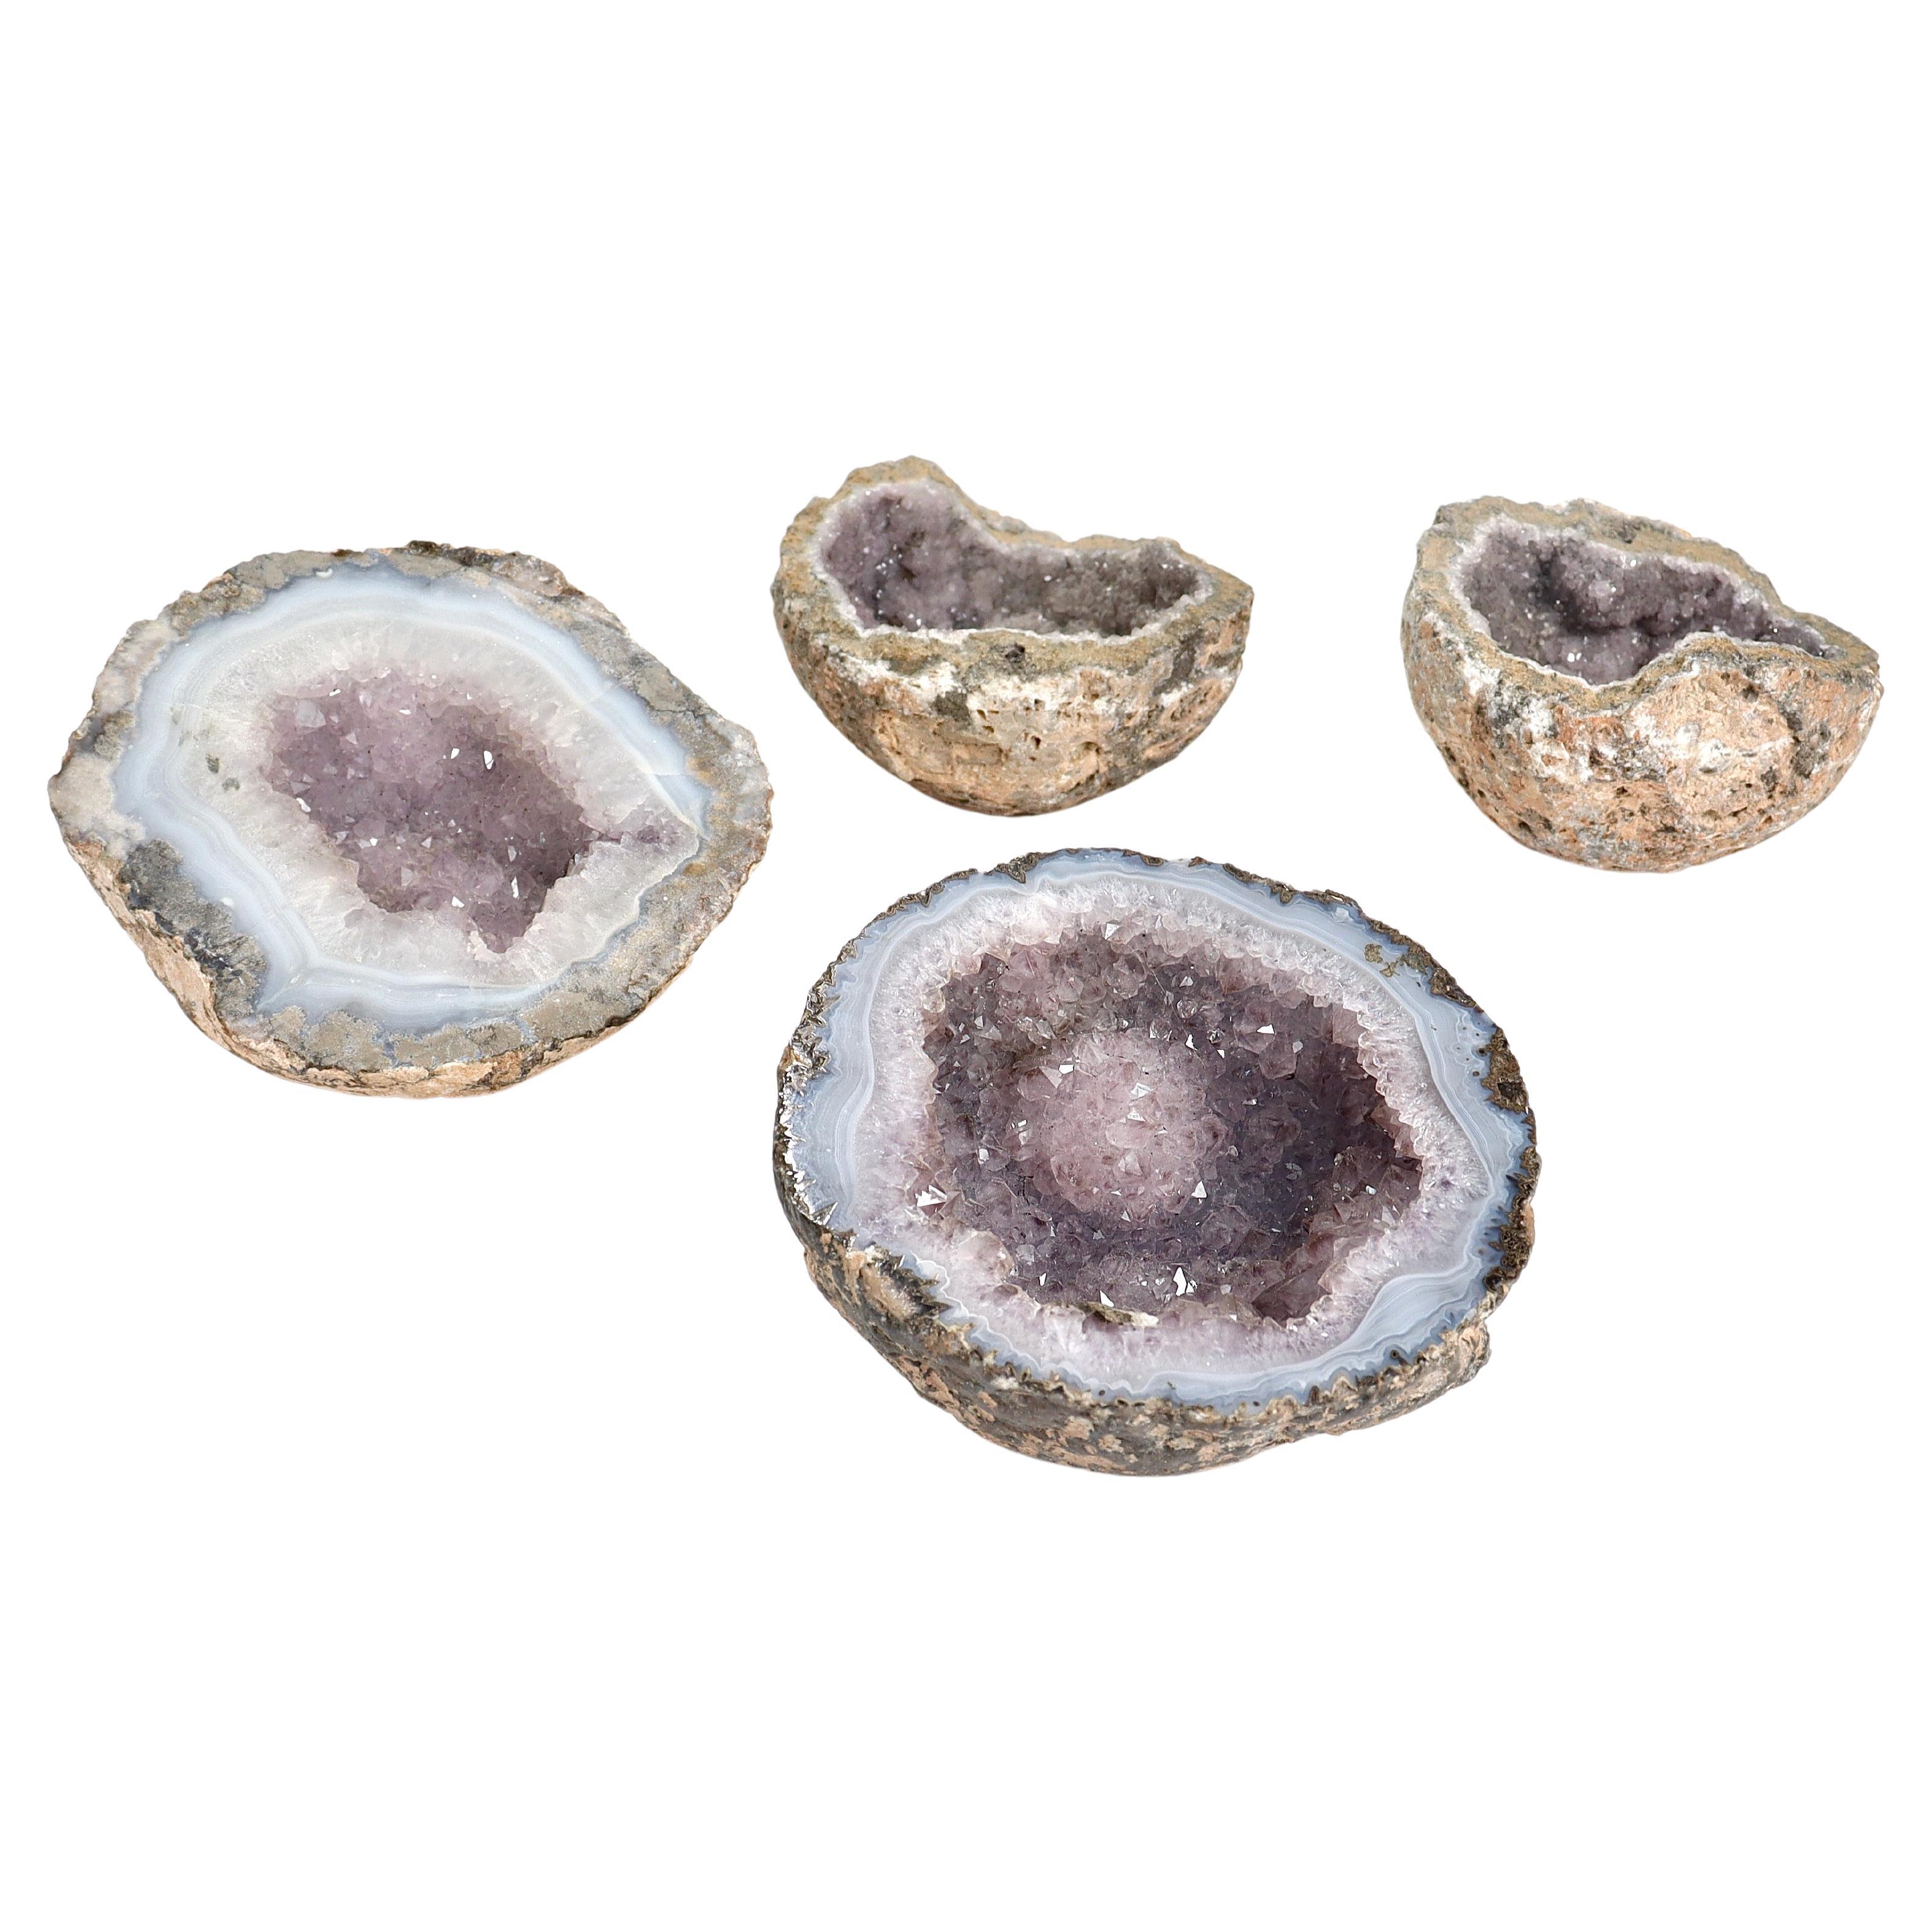 Gruppe von 4 Amethyst-Geoden